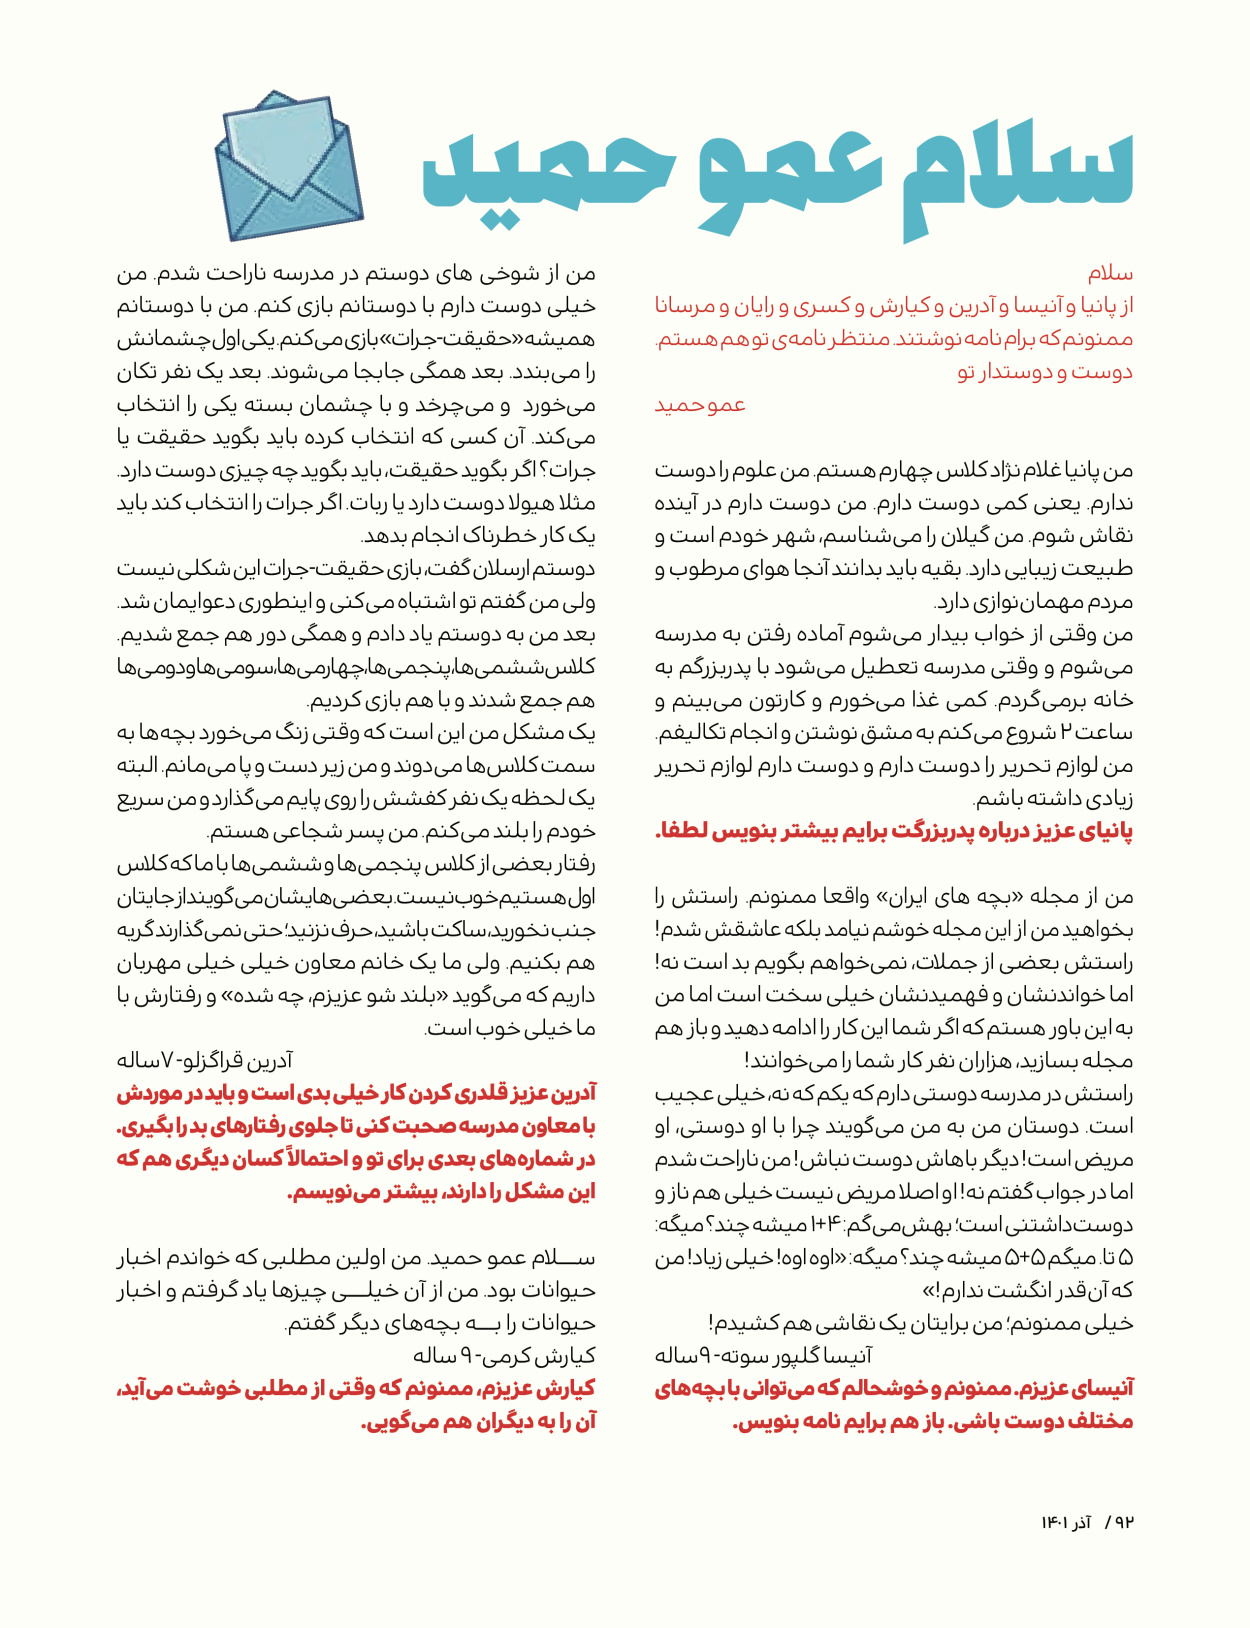 ماه نامه بچه های ایران - شماره یک - ۰۷ شهریور ۱۴۰۲ - صفحه ۹۲